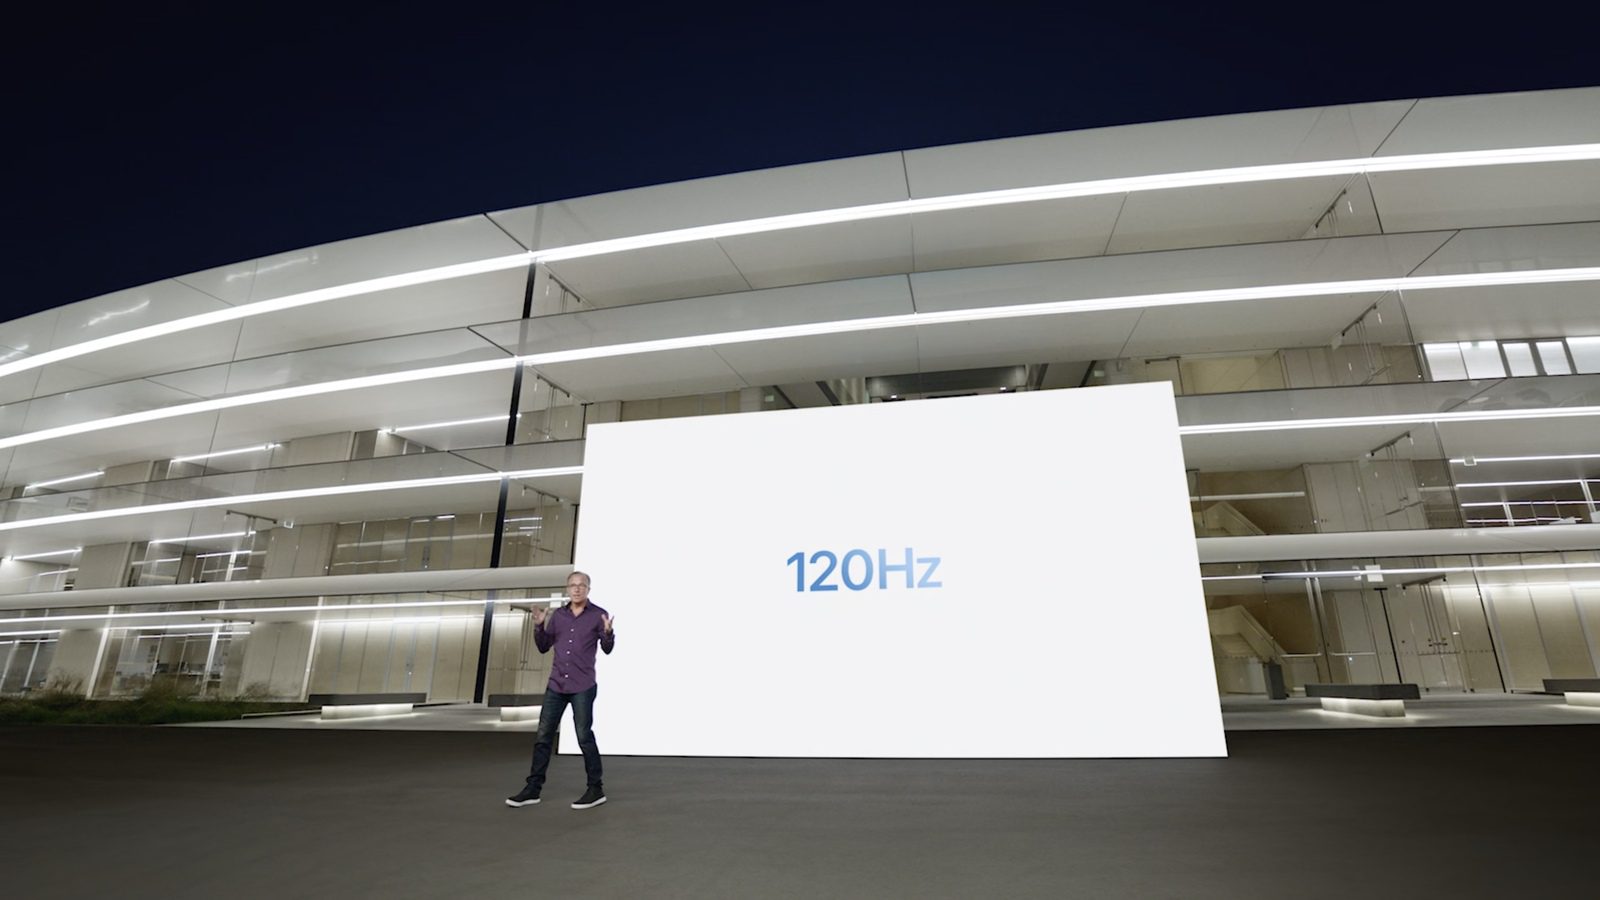 Текстовая трансляция мероприятия Apple Event 2021 года в прямом эфире